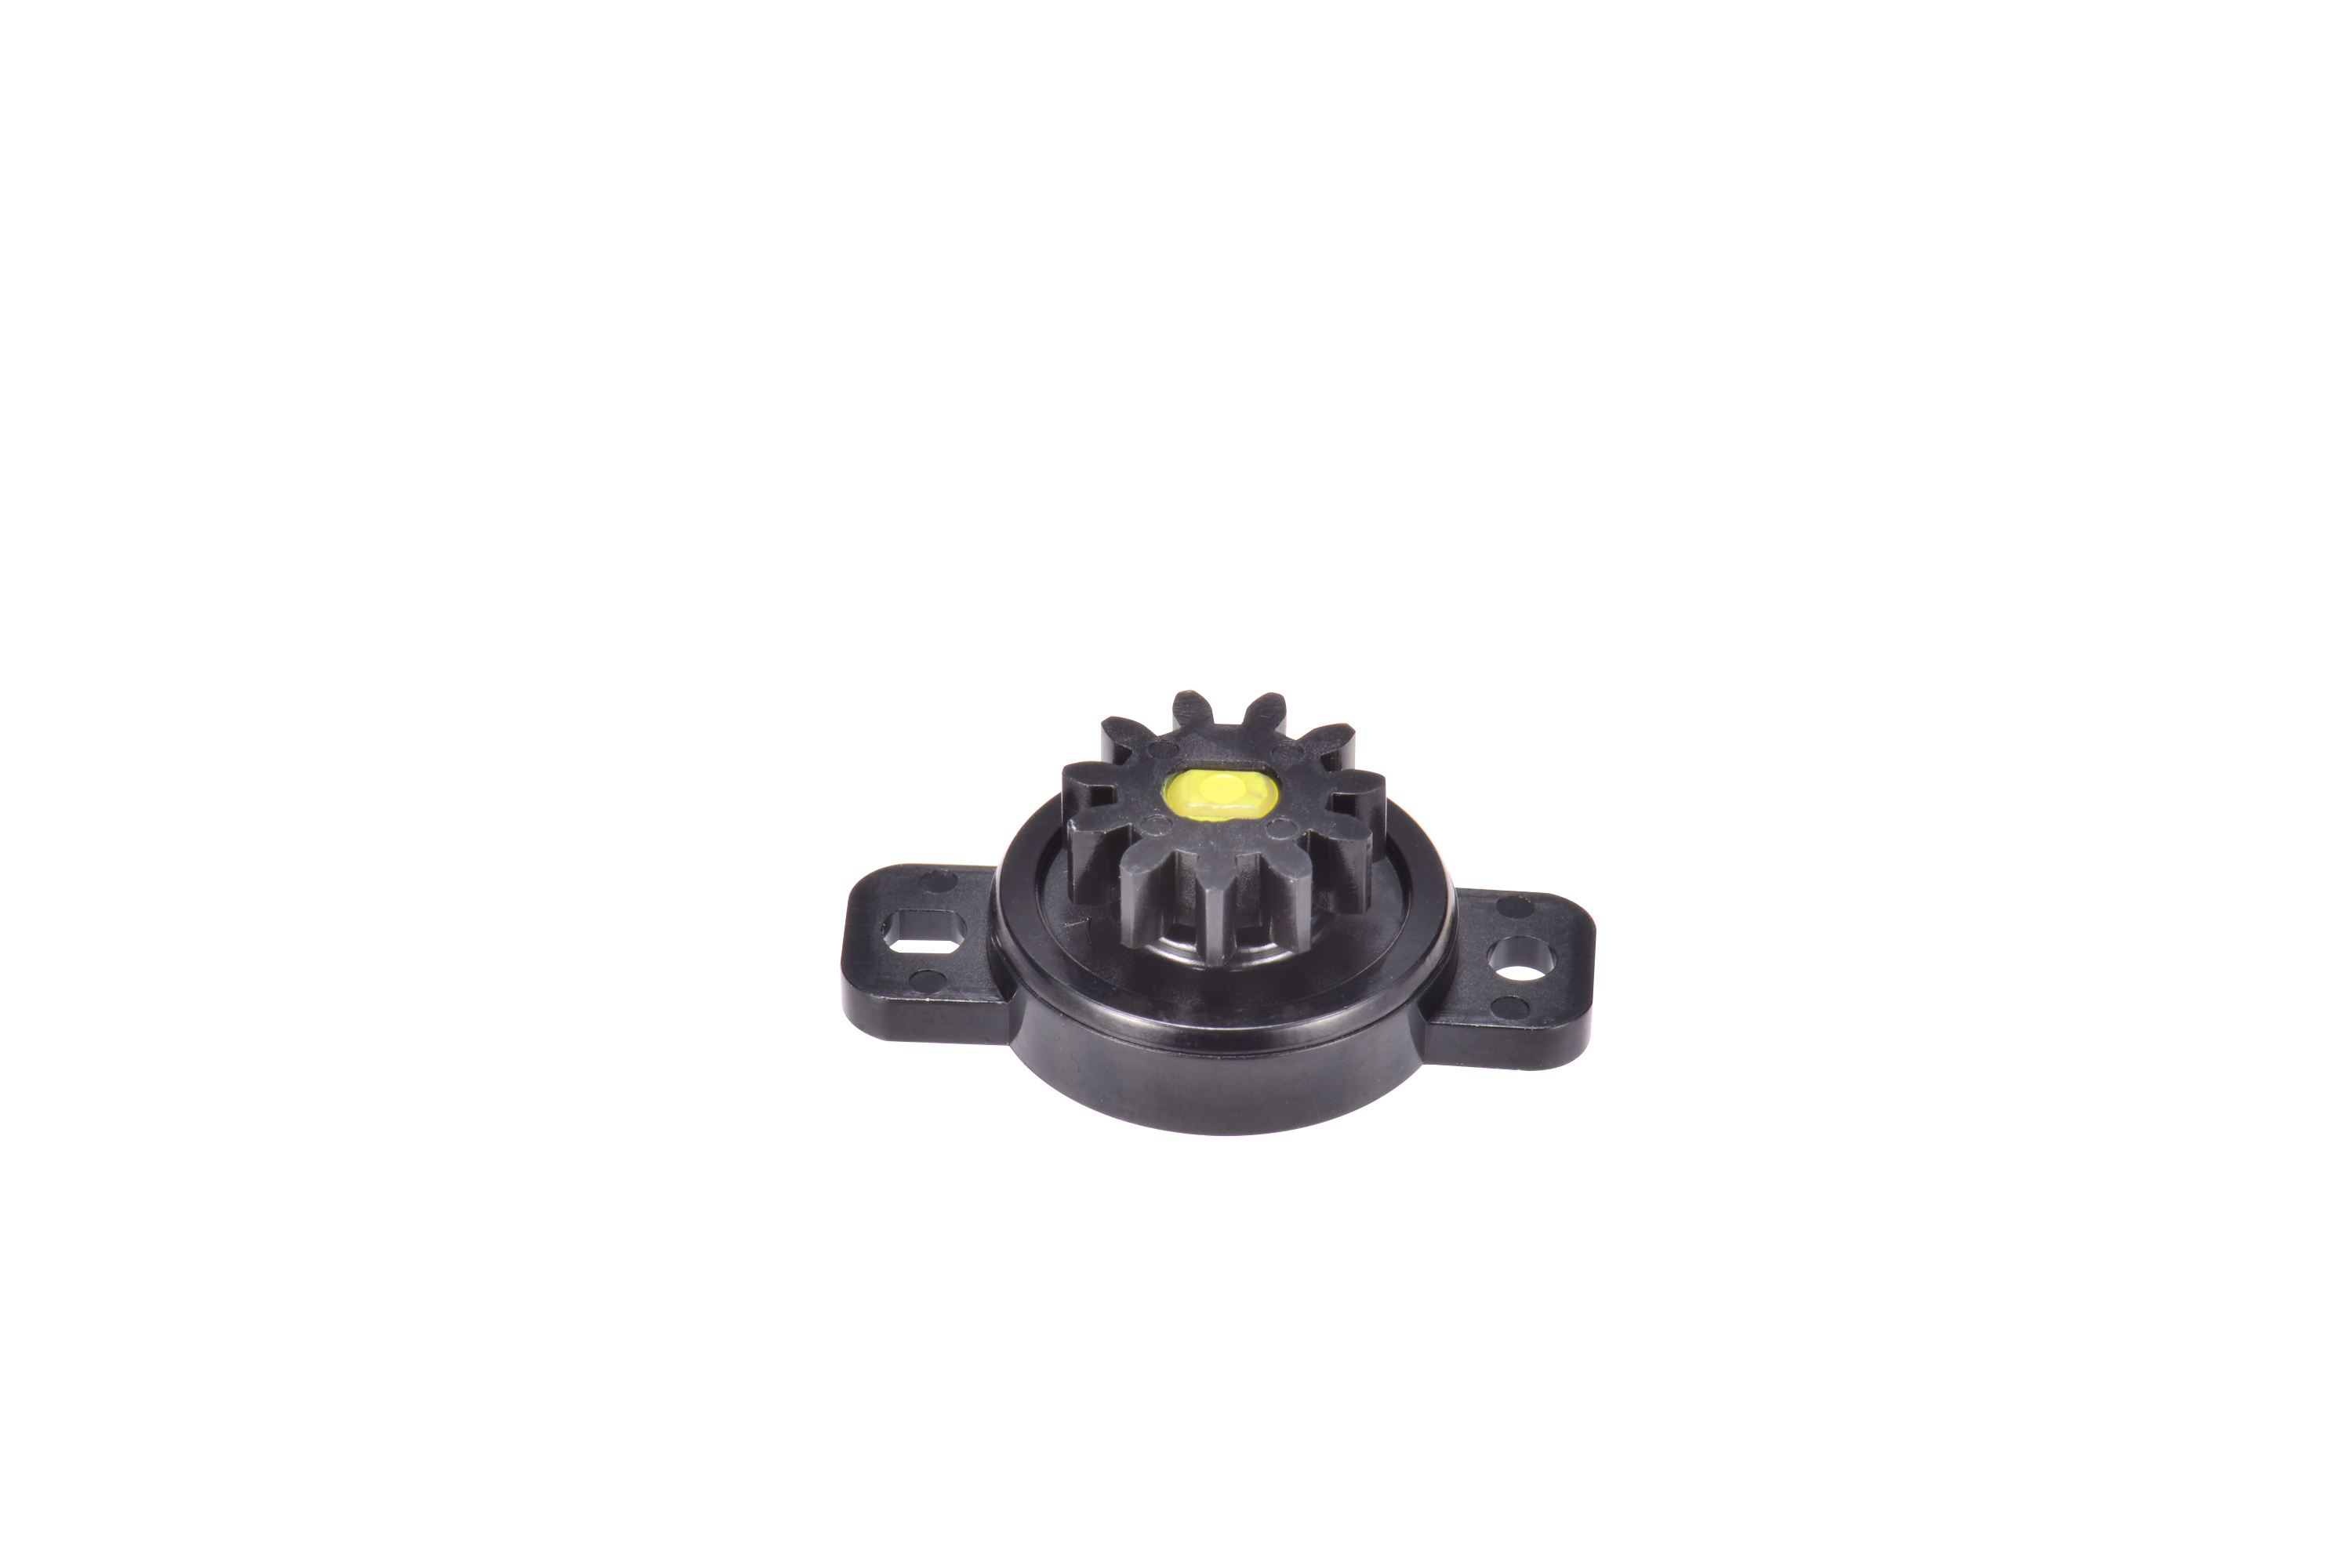 D01026 Amortiguadores rotativos unidireccionales de precisión con precio competitivo